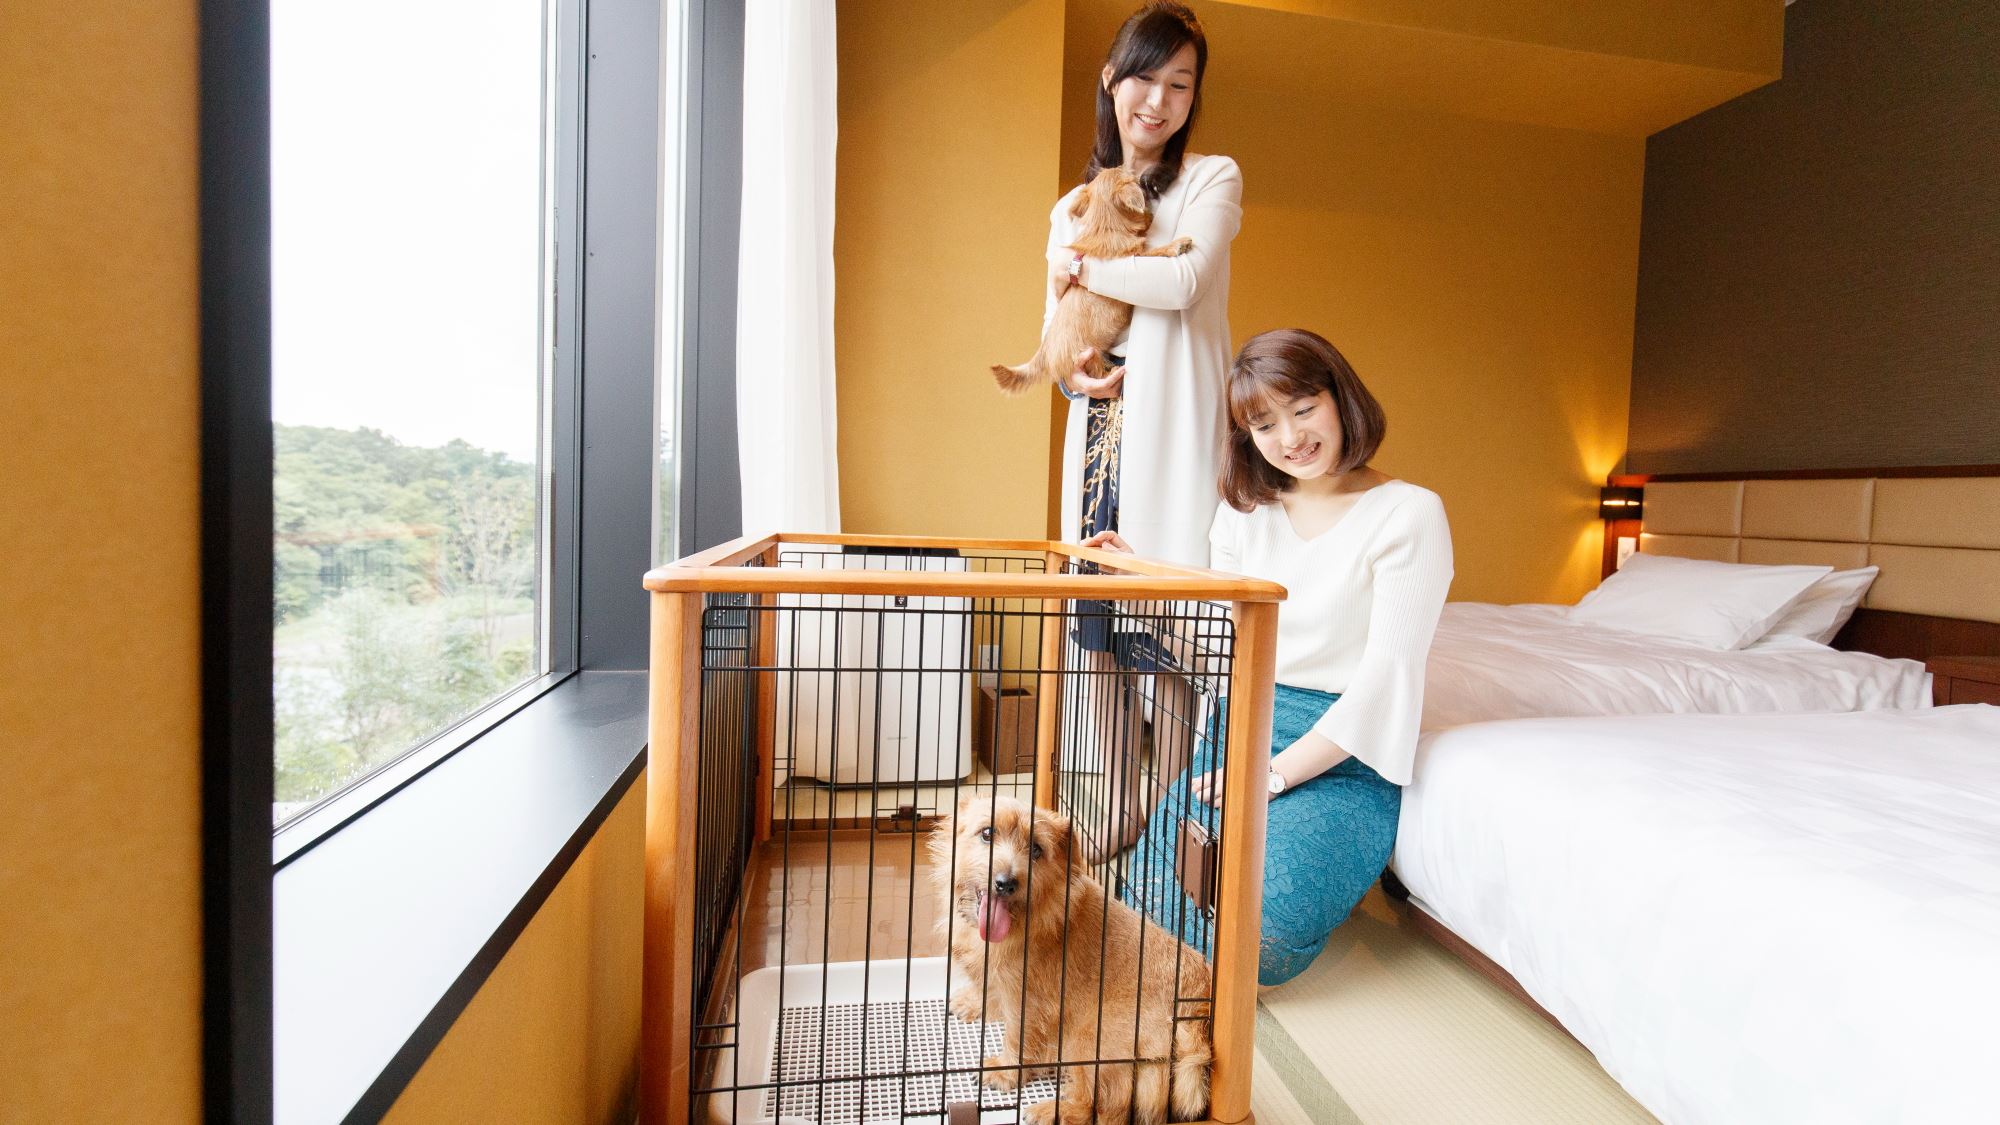  【愛犬同伴専用客室】 小型犬(6㎏以下)で1室あたり2頭まで同伴可能です。